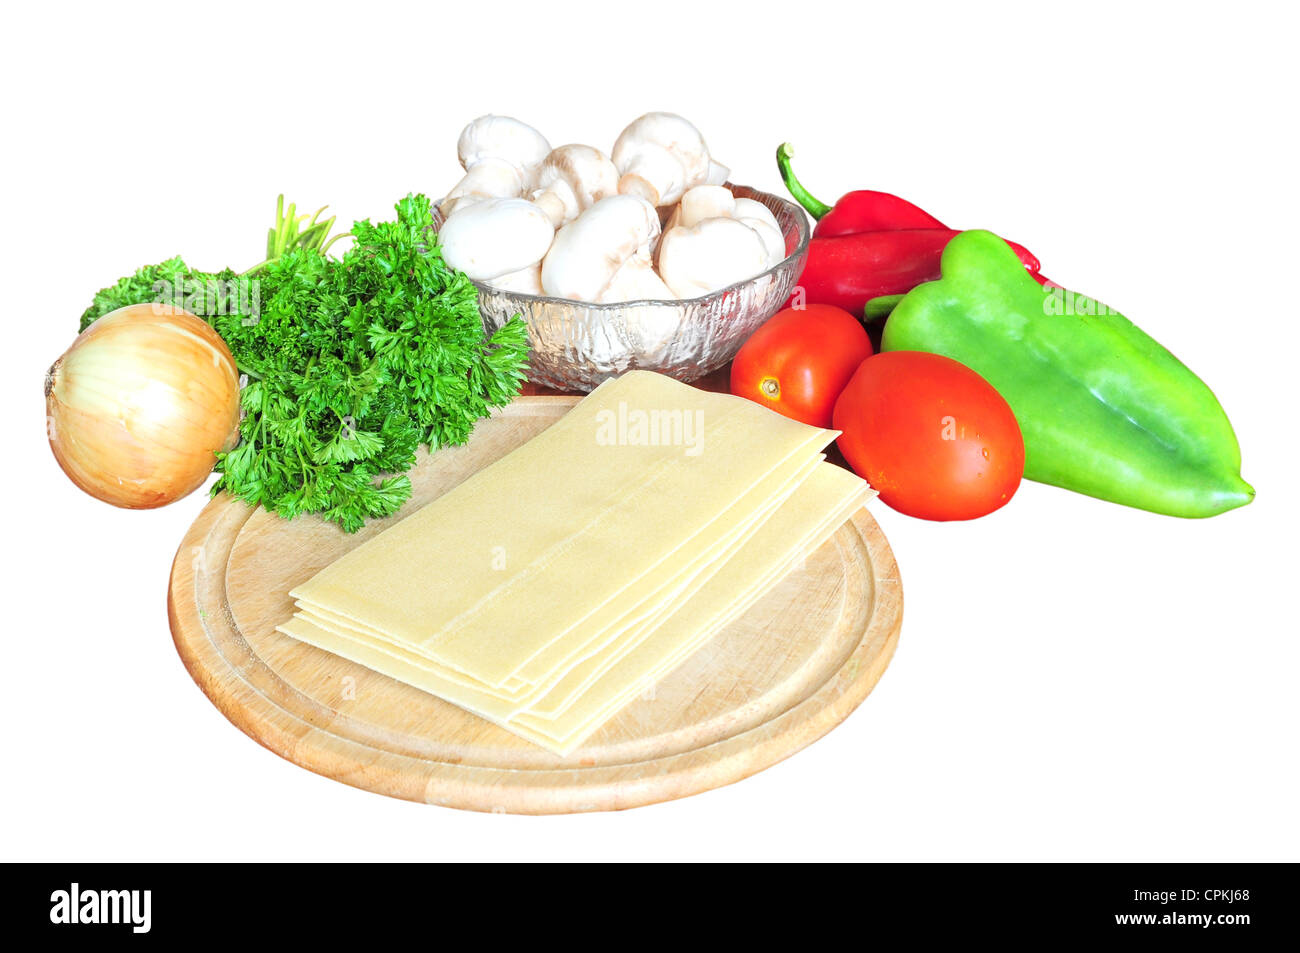 Zutaten für Lasagne - Tomaten, Paprika, Zwiebel, Petersilie, Pilze, Pasta, isoliert auf weiss Stockfoto